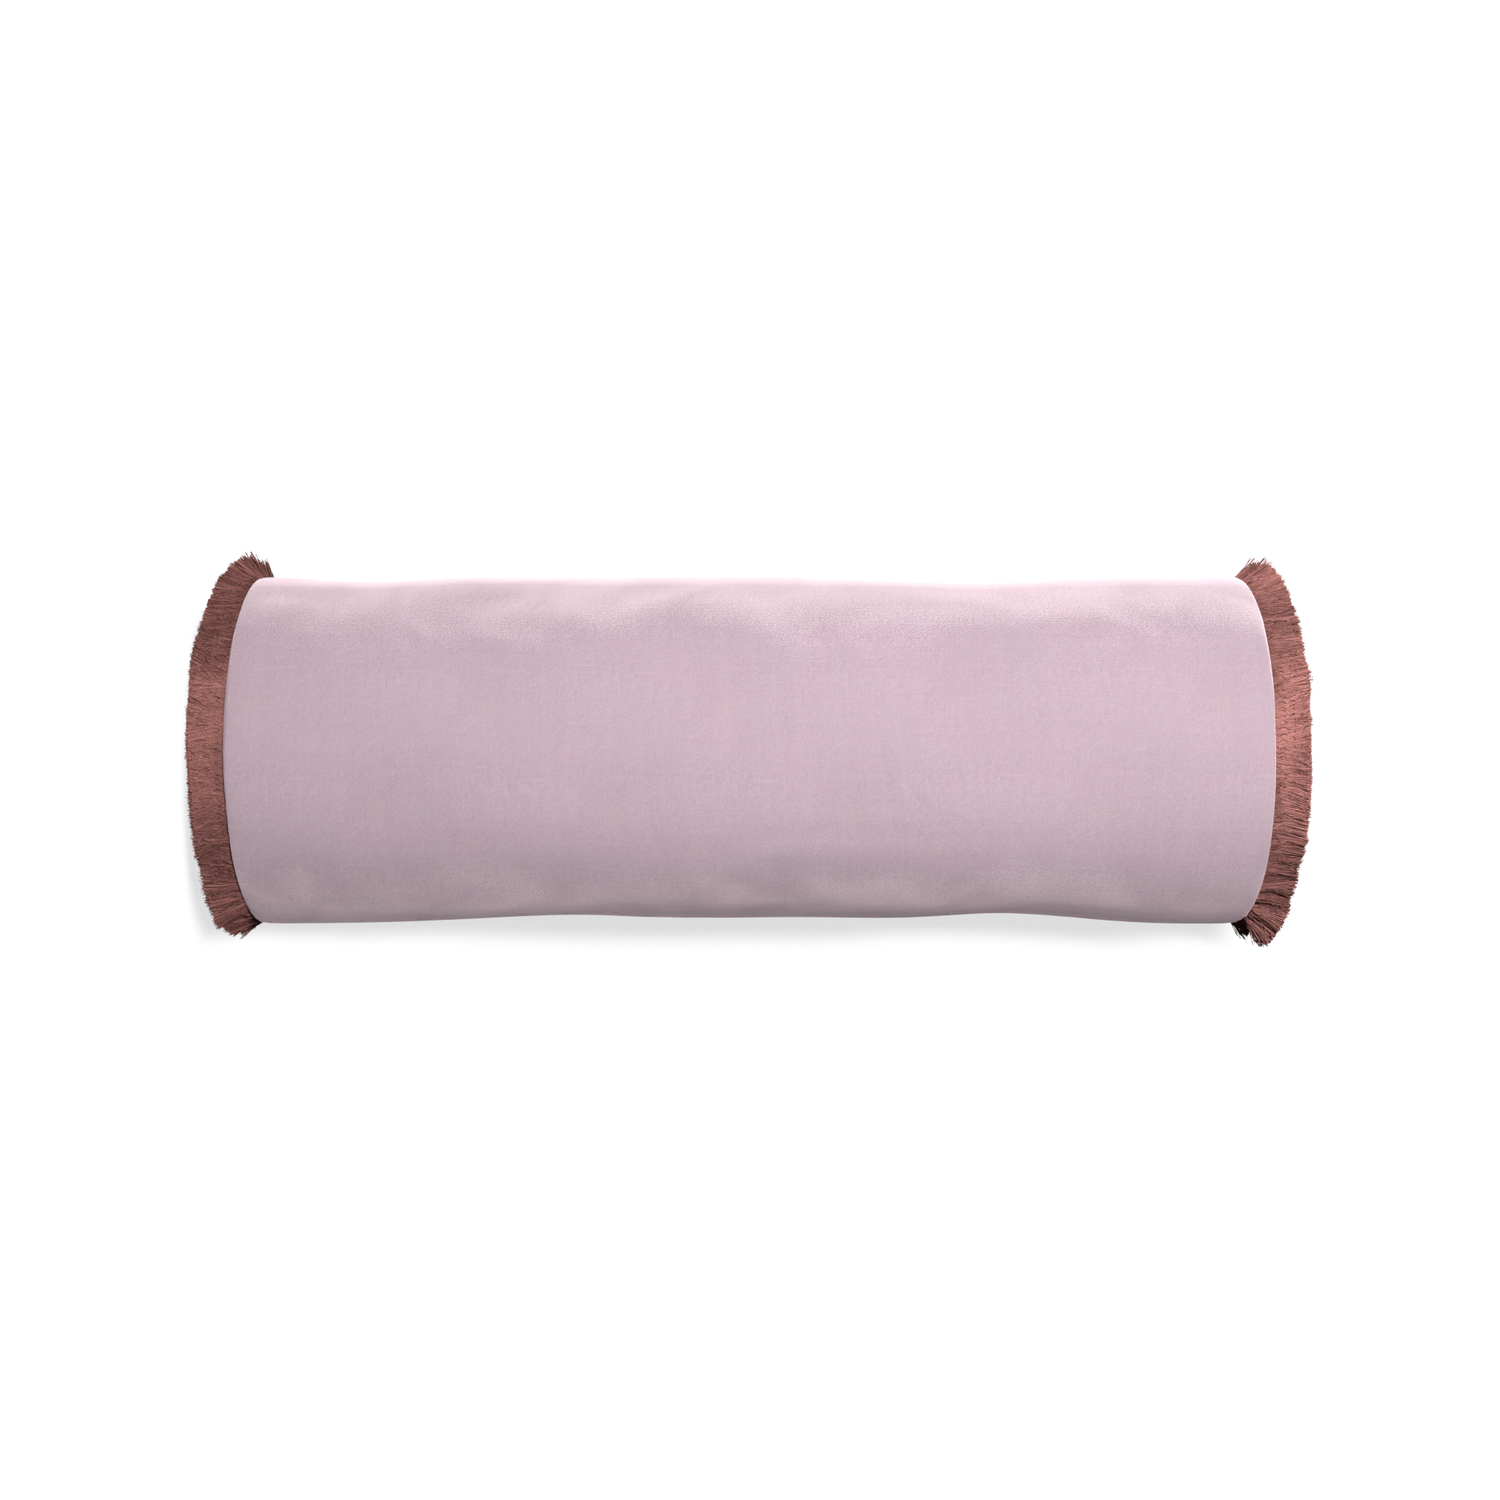 bolster lilac velvet pillow with dusty rose fringe 